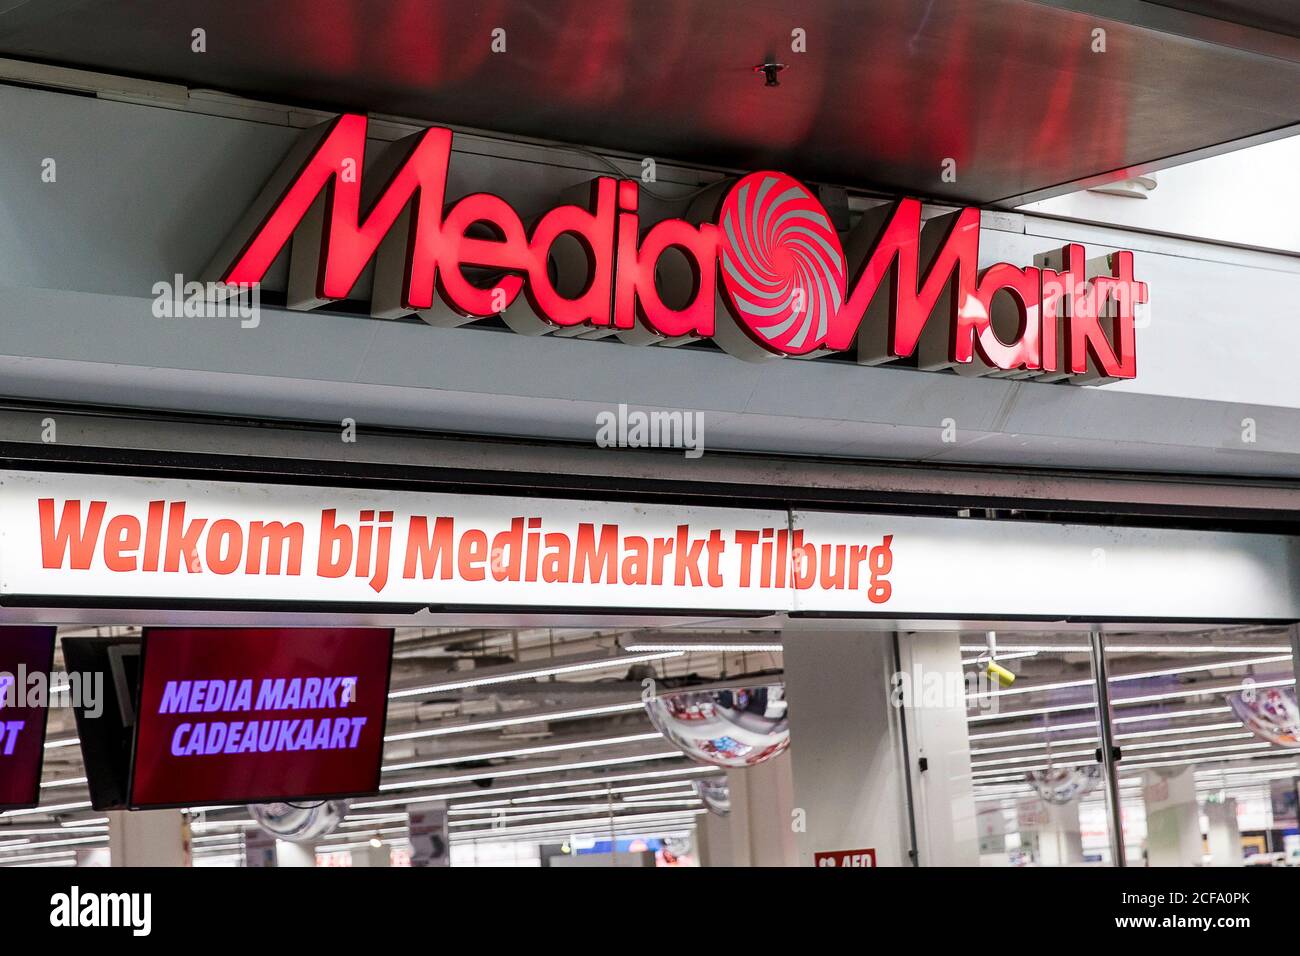 les In het algemeen Oordeel TILBURG - Stock exterior Mediamarkt shop Stock exterieur Mediamarkt winkel  Stock Photo - Alamy